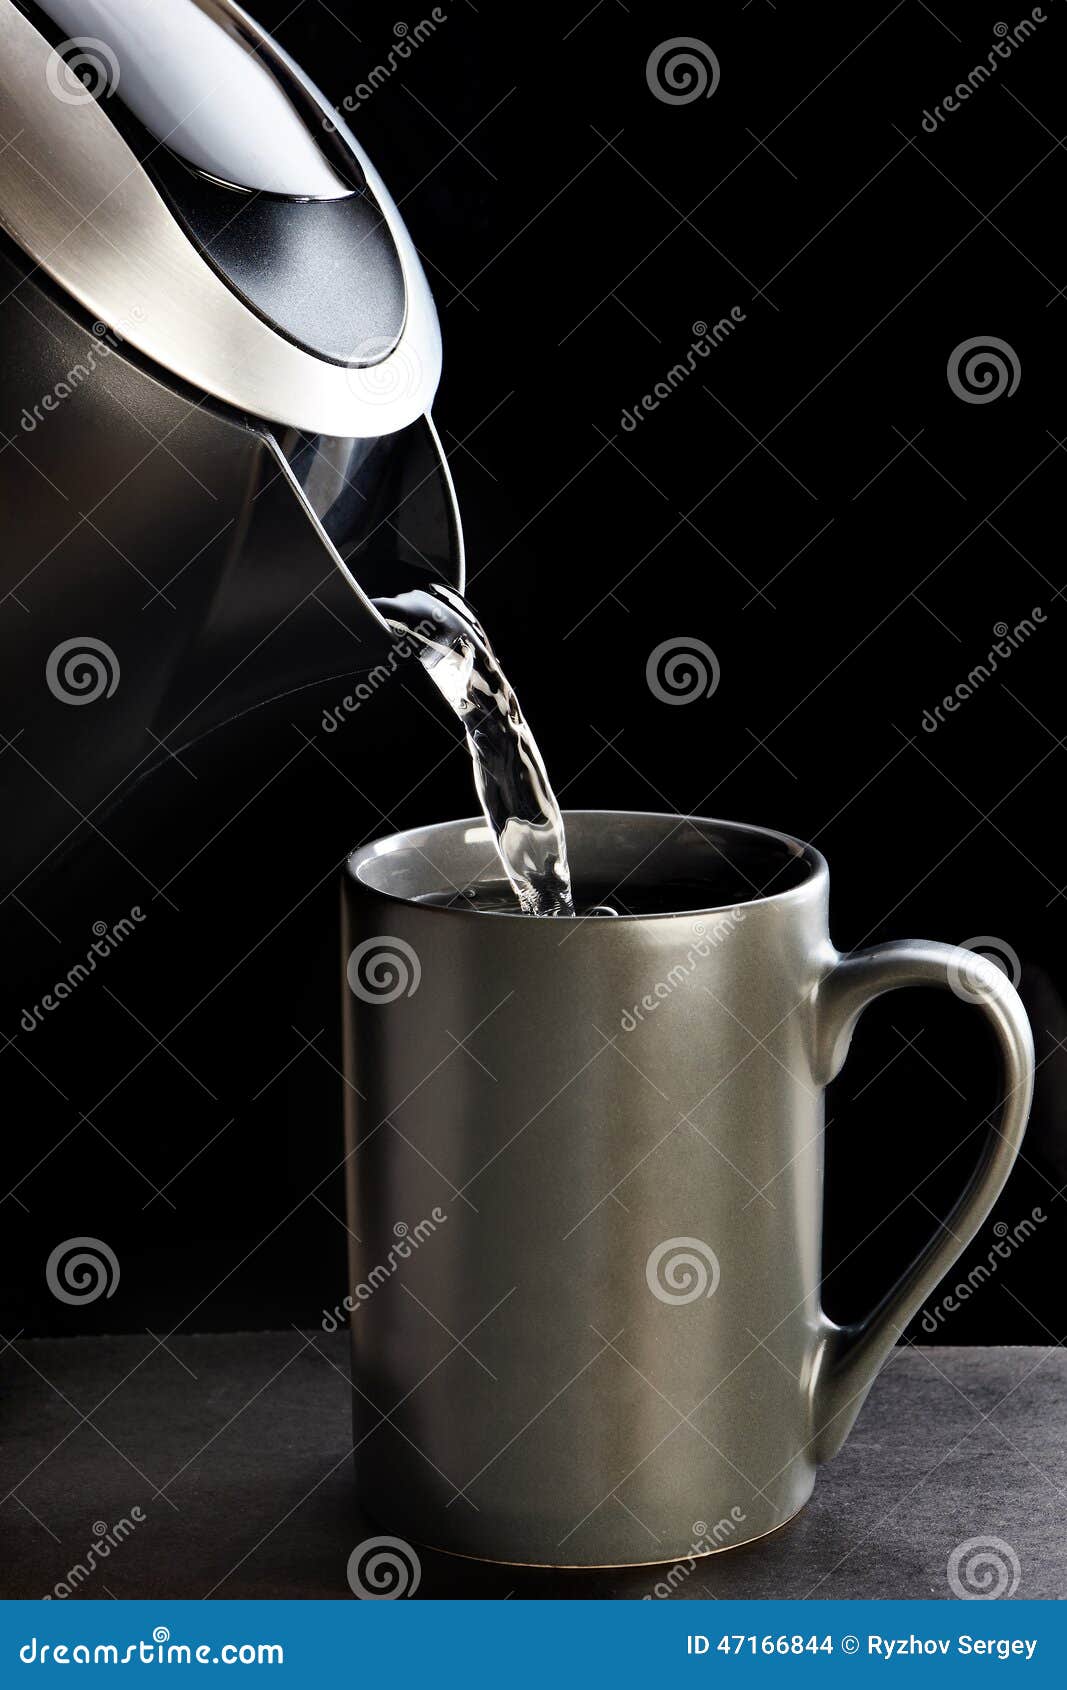 В чайник налили 3 литра холодной воды. Вода из чайника. Наливание жидкости в кружку. Наливаем воду в кружку. Чайник наливает воду.